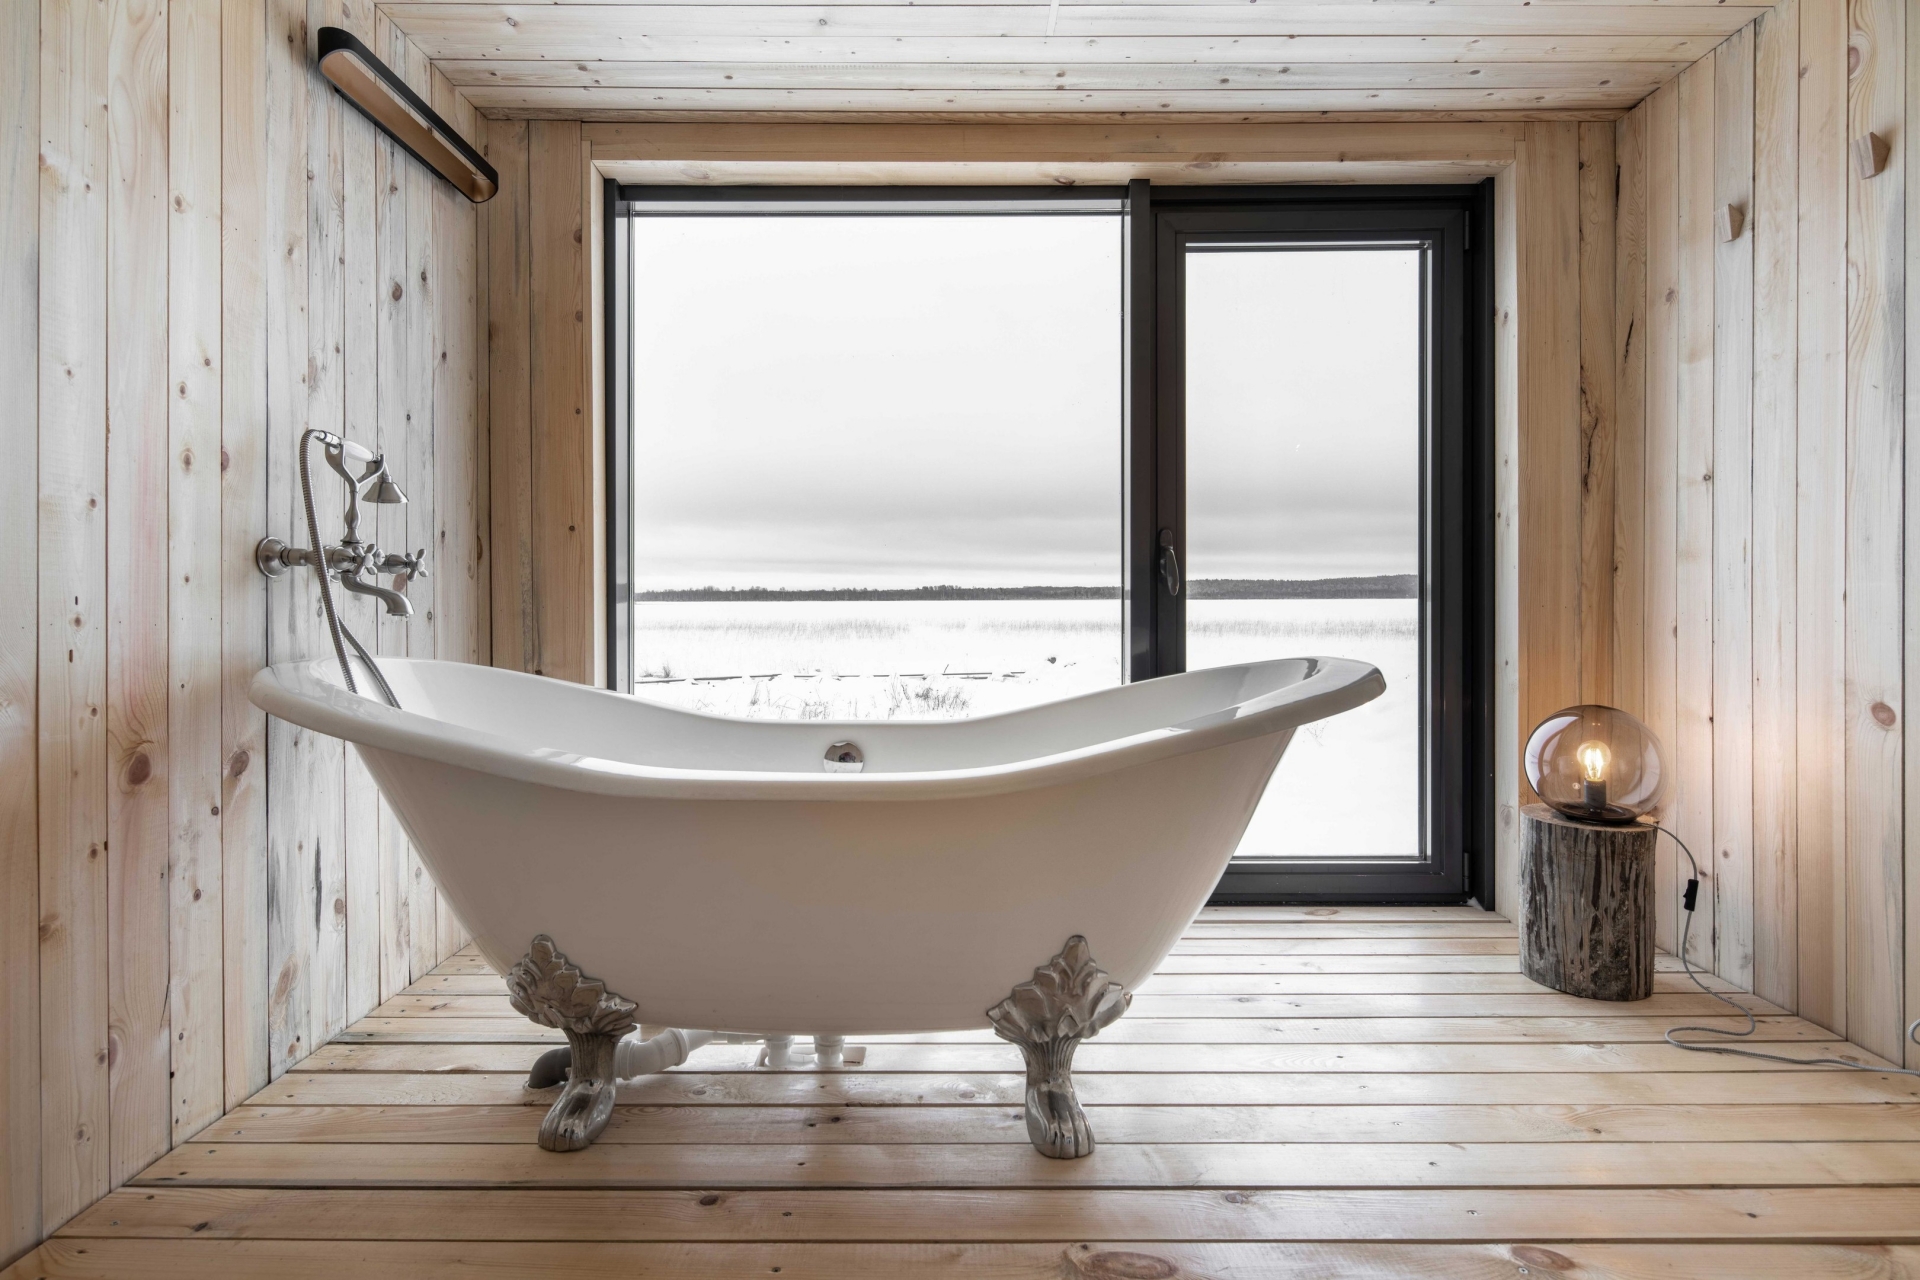 Phòng tắm nằm trong nhà khách vùng ngoại ô Cộng hòa Kareliya do Maya Baklan thiết kế nội thất. Tường, trần và sàn nhà được hoàn thiện bằng ván gỗ mộc mạc như hòa quyện cùng thiên nhiên thoáng đãng bên ngoài.